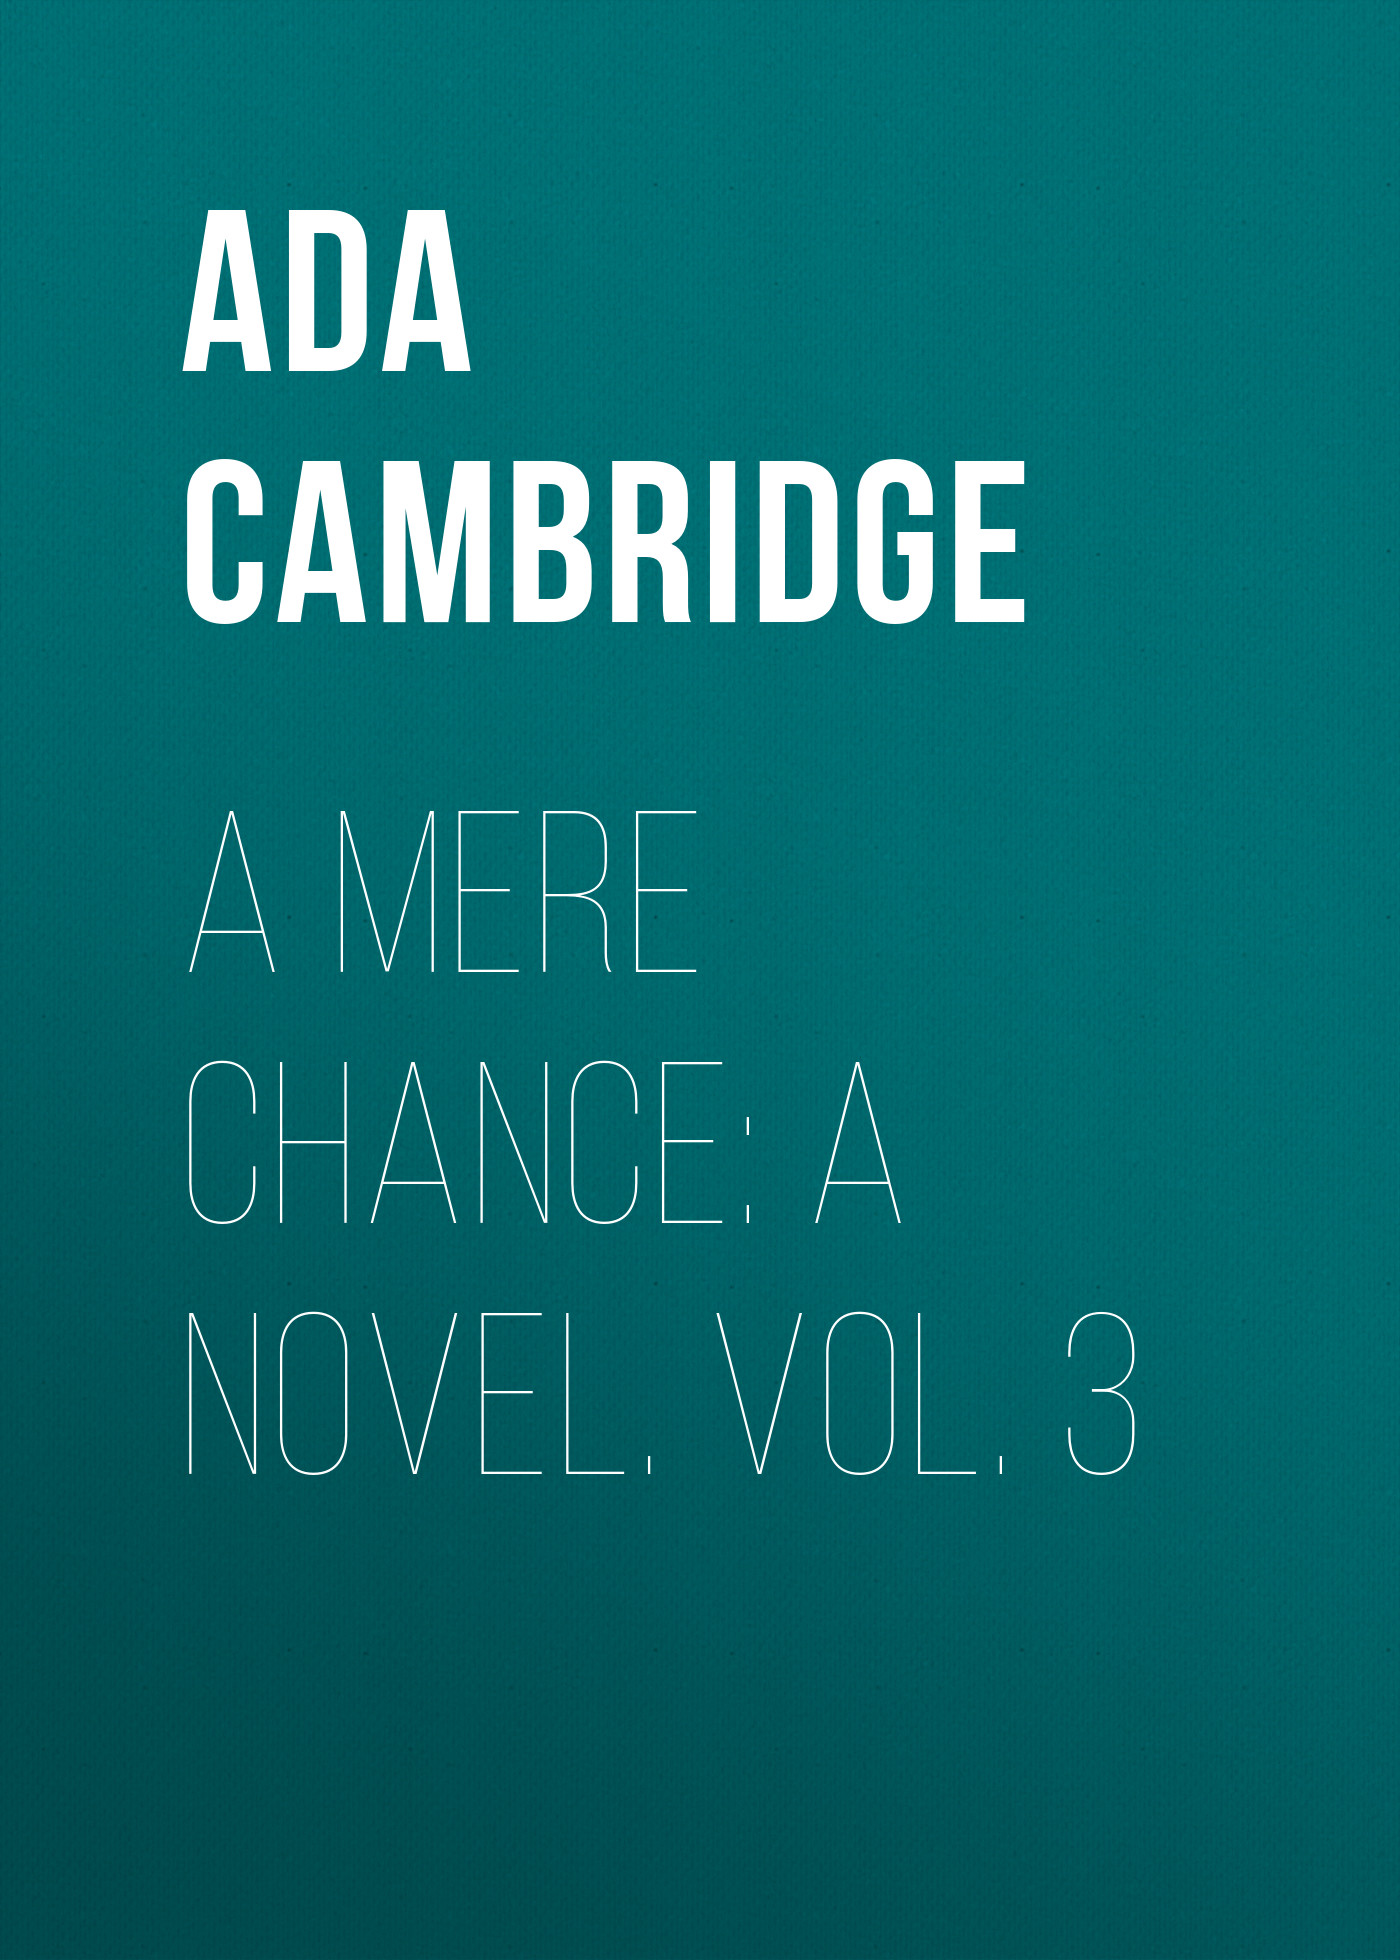 Книга A Mere Chance: A Novel. Vol. 3 из серии , созданная Ada Cambridge, может относится к жанру Зарубежная старинная литература, Зарубежная классика. Стоимость электронной книги A Mere Chance: A Novel. Vol. 3 с идентификатором 24170860 составляет 0.90 руб.